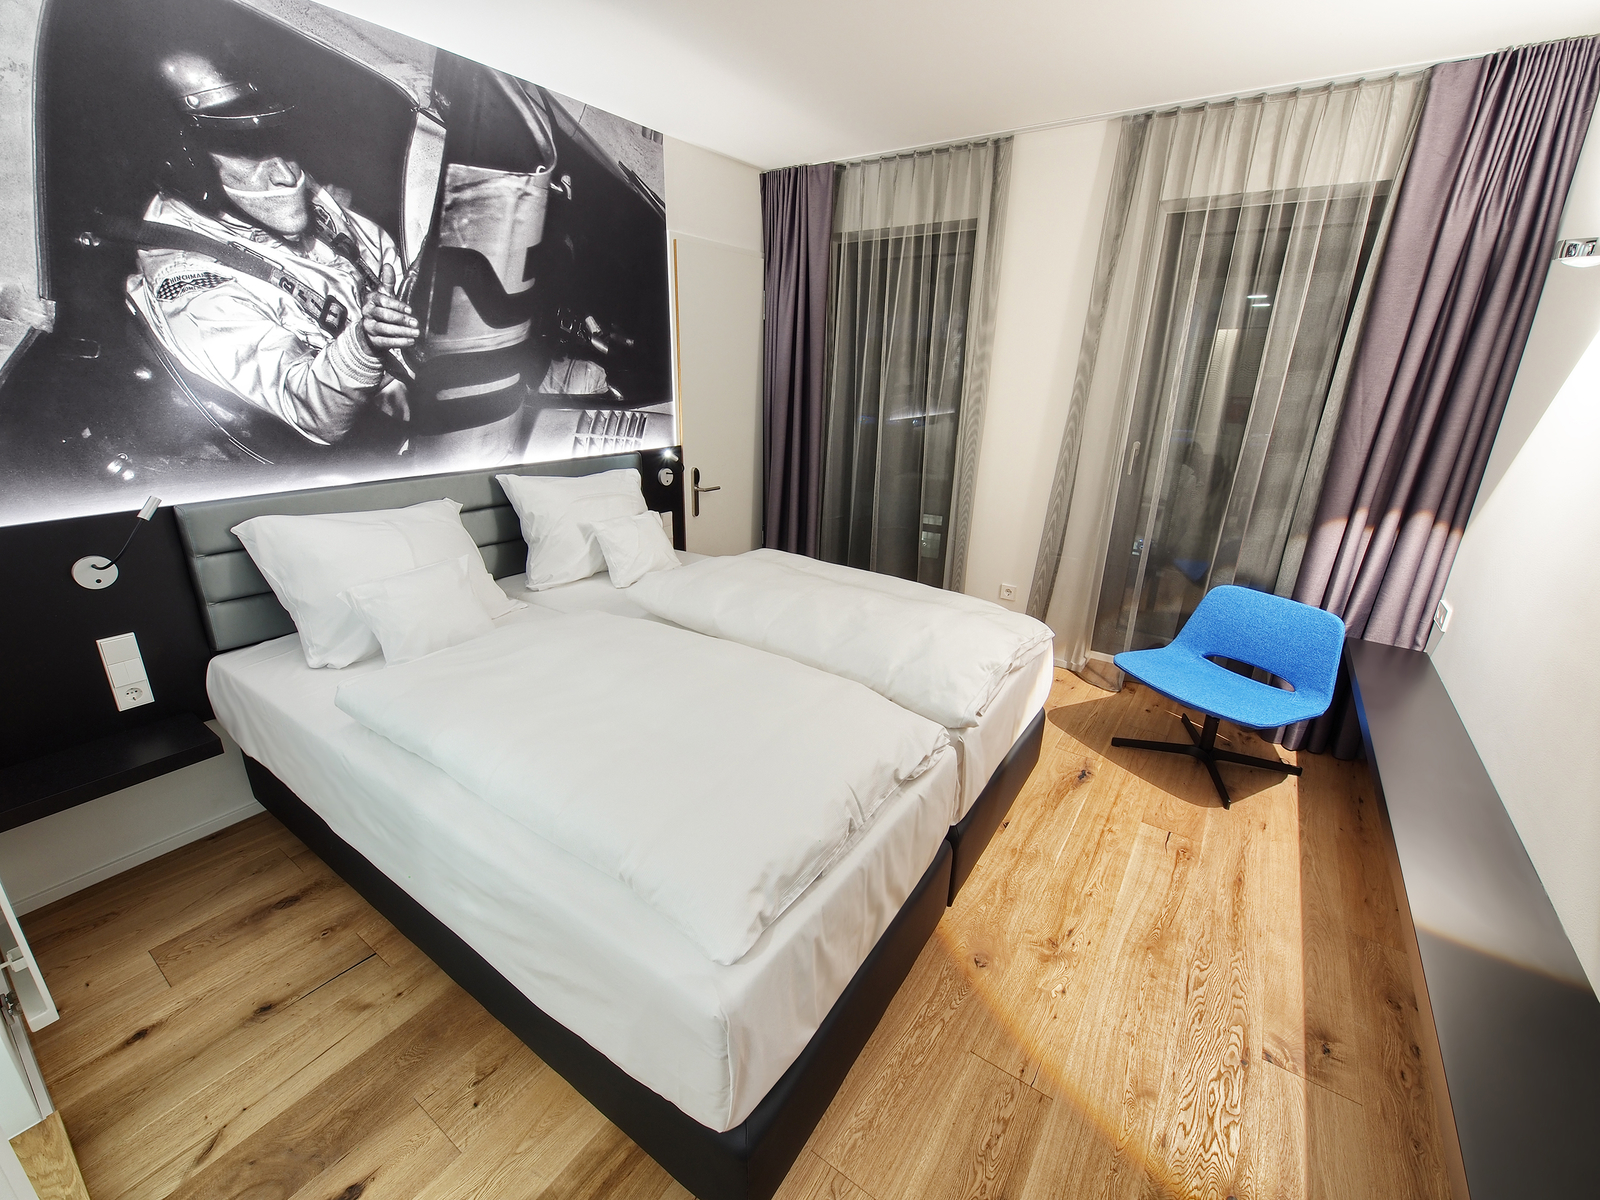 Modern eingerichtetes Hotelzimmer mit komfortablem Doppelbett, blauem Sessel in der Ecke sowie Bild an der Wand.